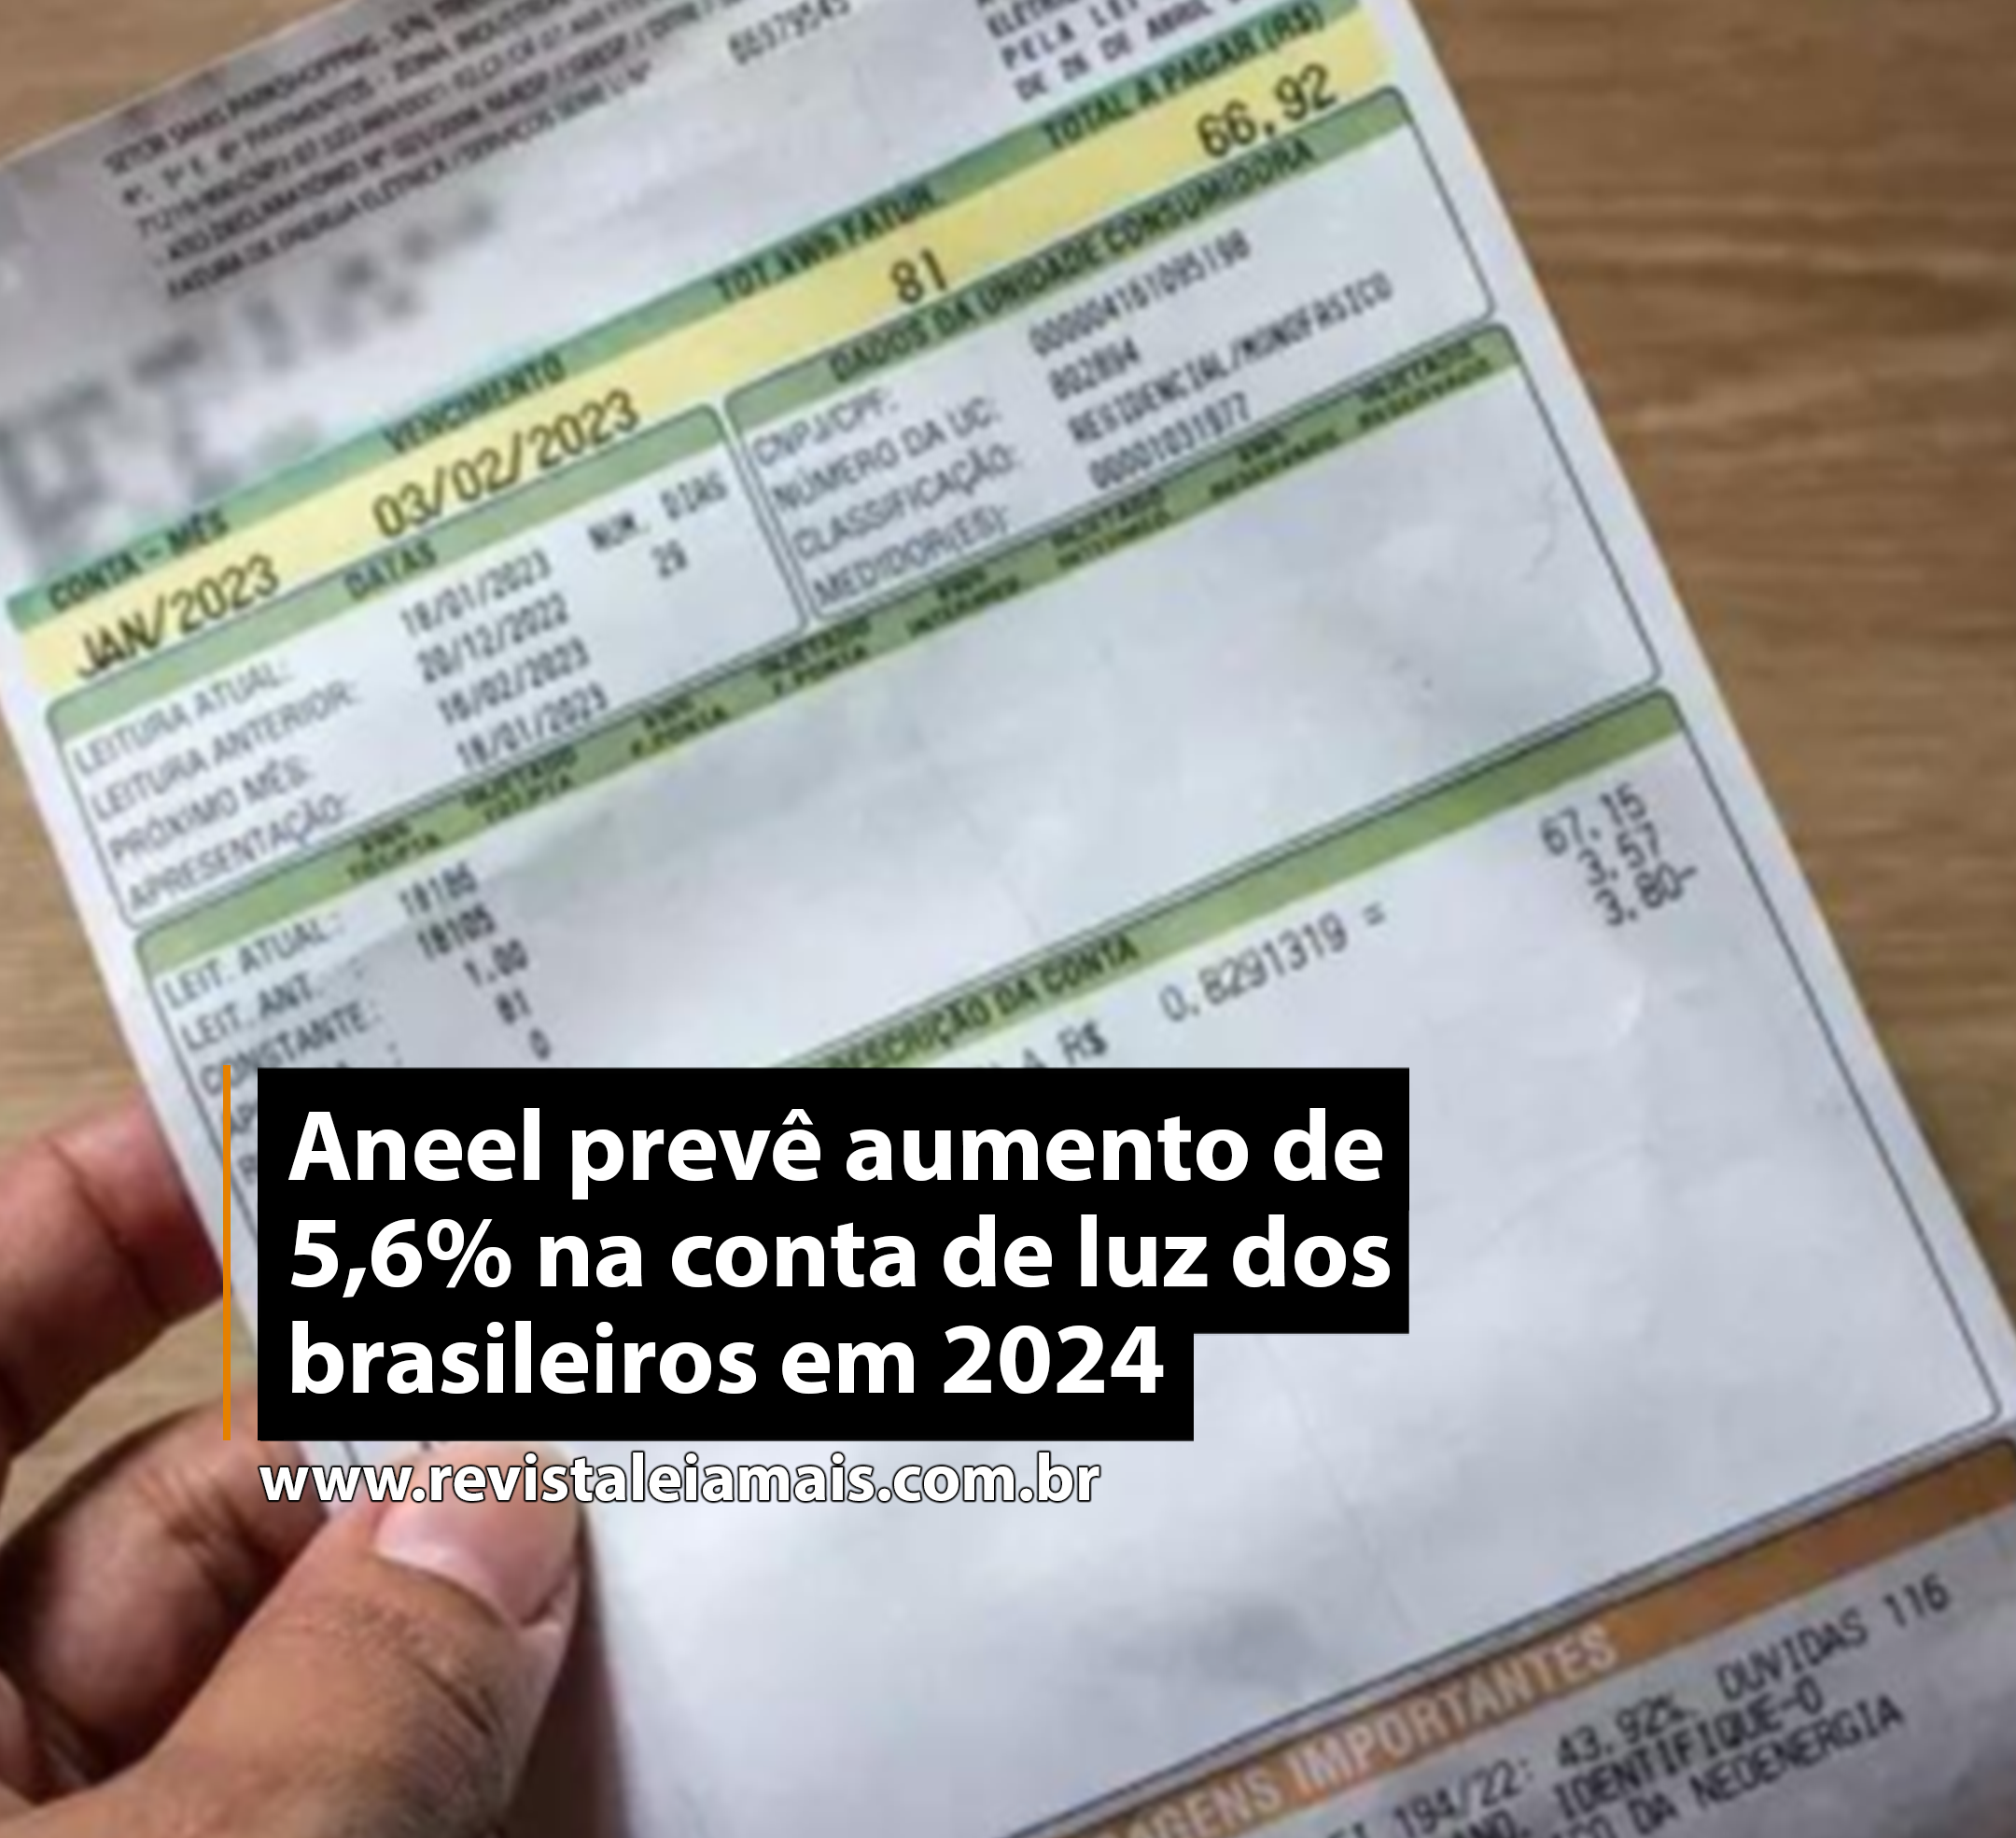 Aneel prevê aumento de 5,6% na conta de luz dos brasileiros em 2024